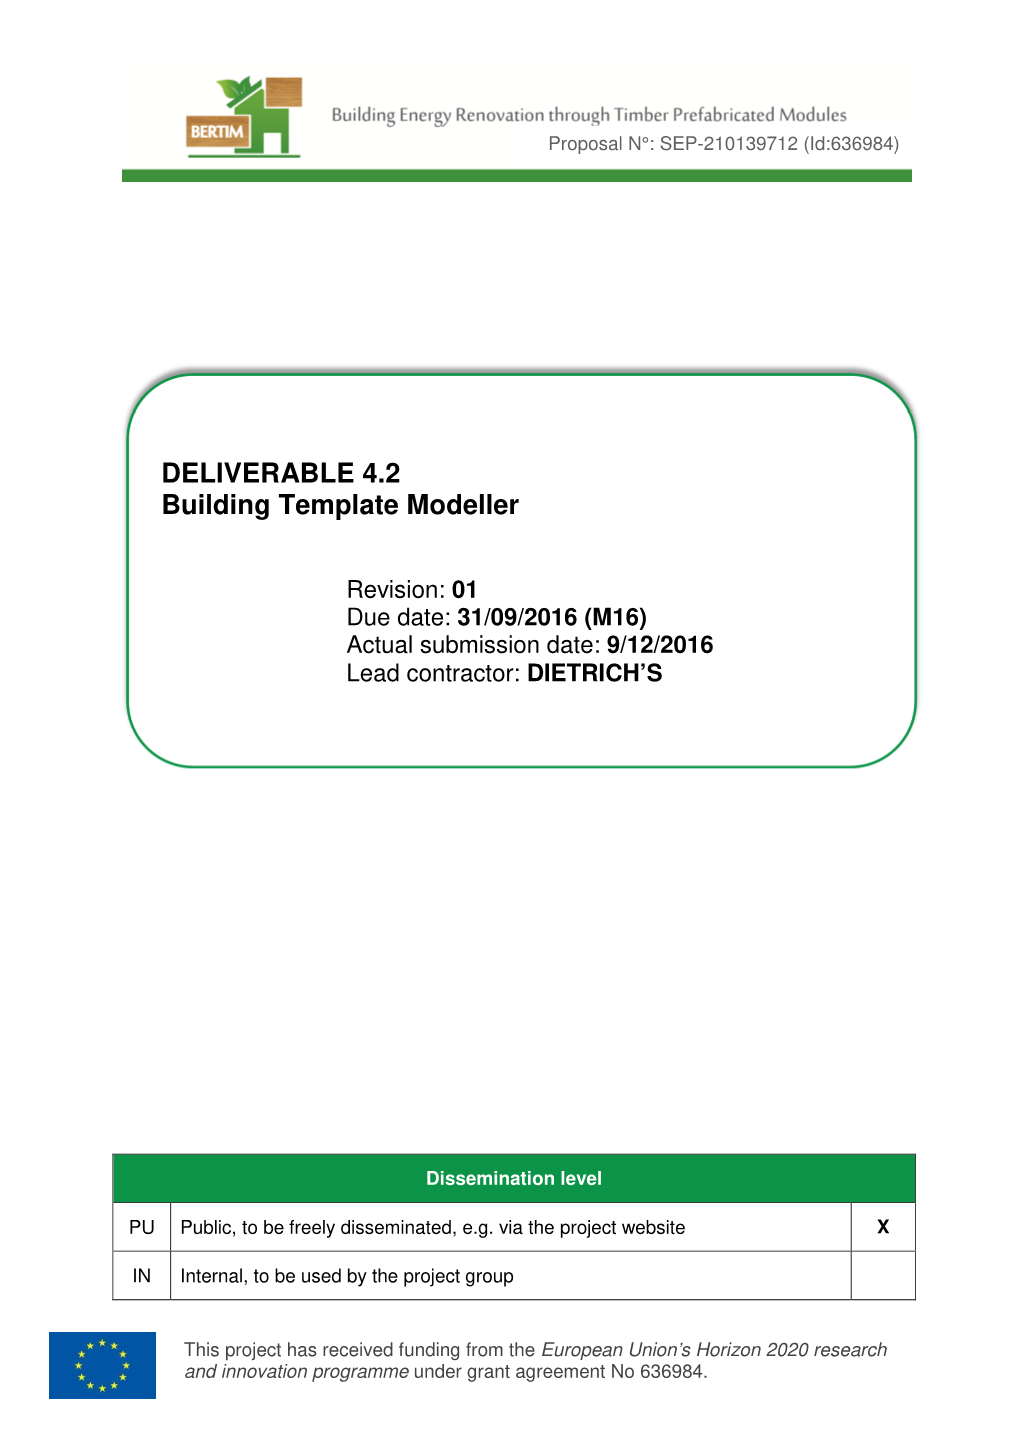 DELIVERABLE 4.2 Building Template Modeller